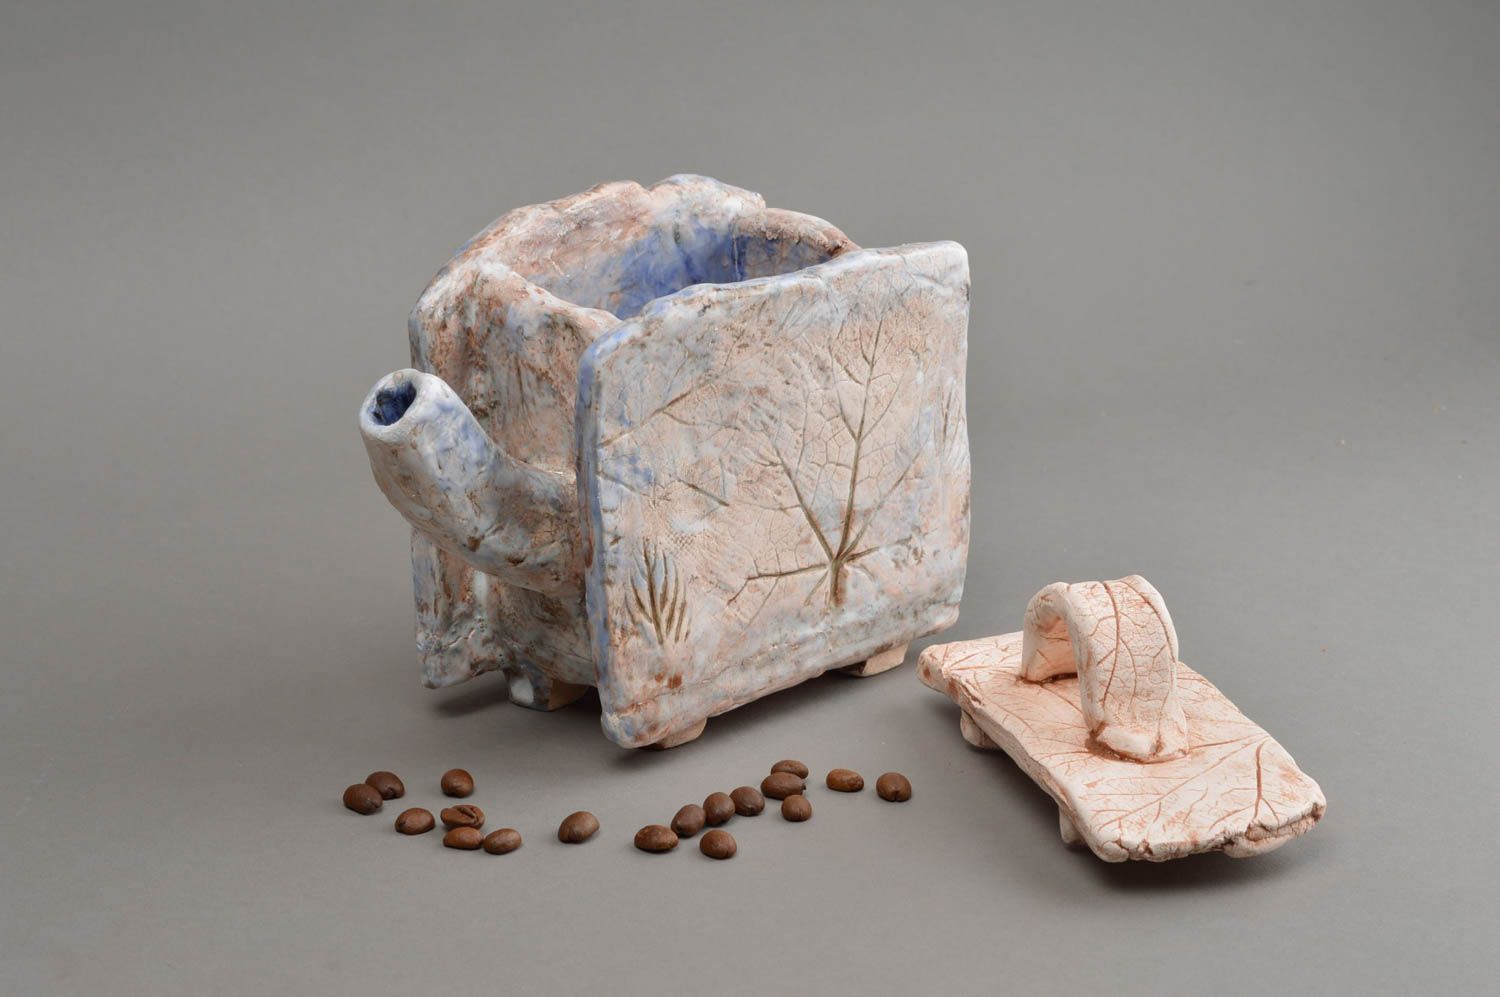 Статуэтка из шамотной глины расписанная глазурью в виде чайника ручной работы фото 1